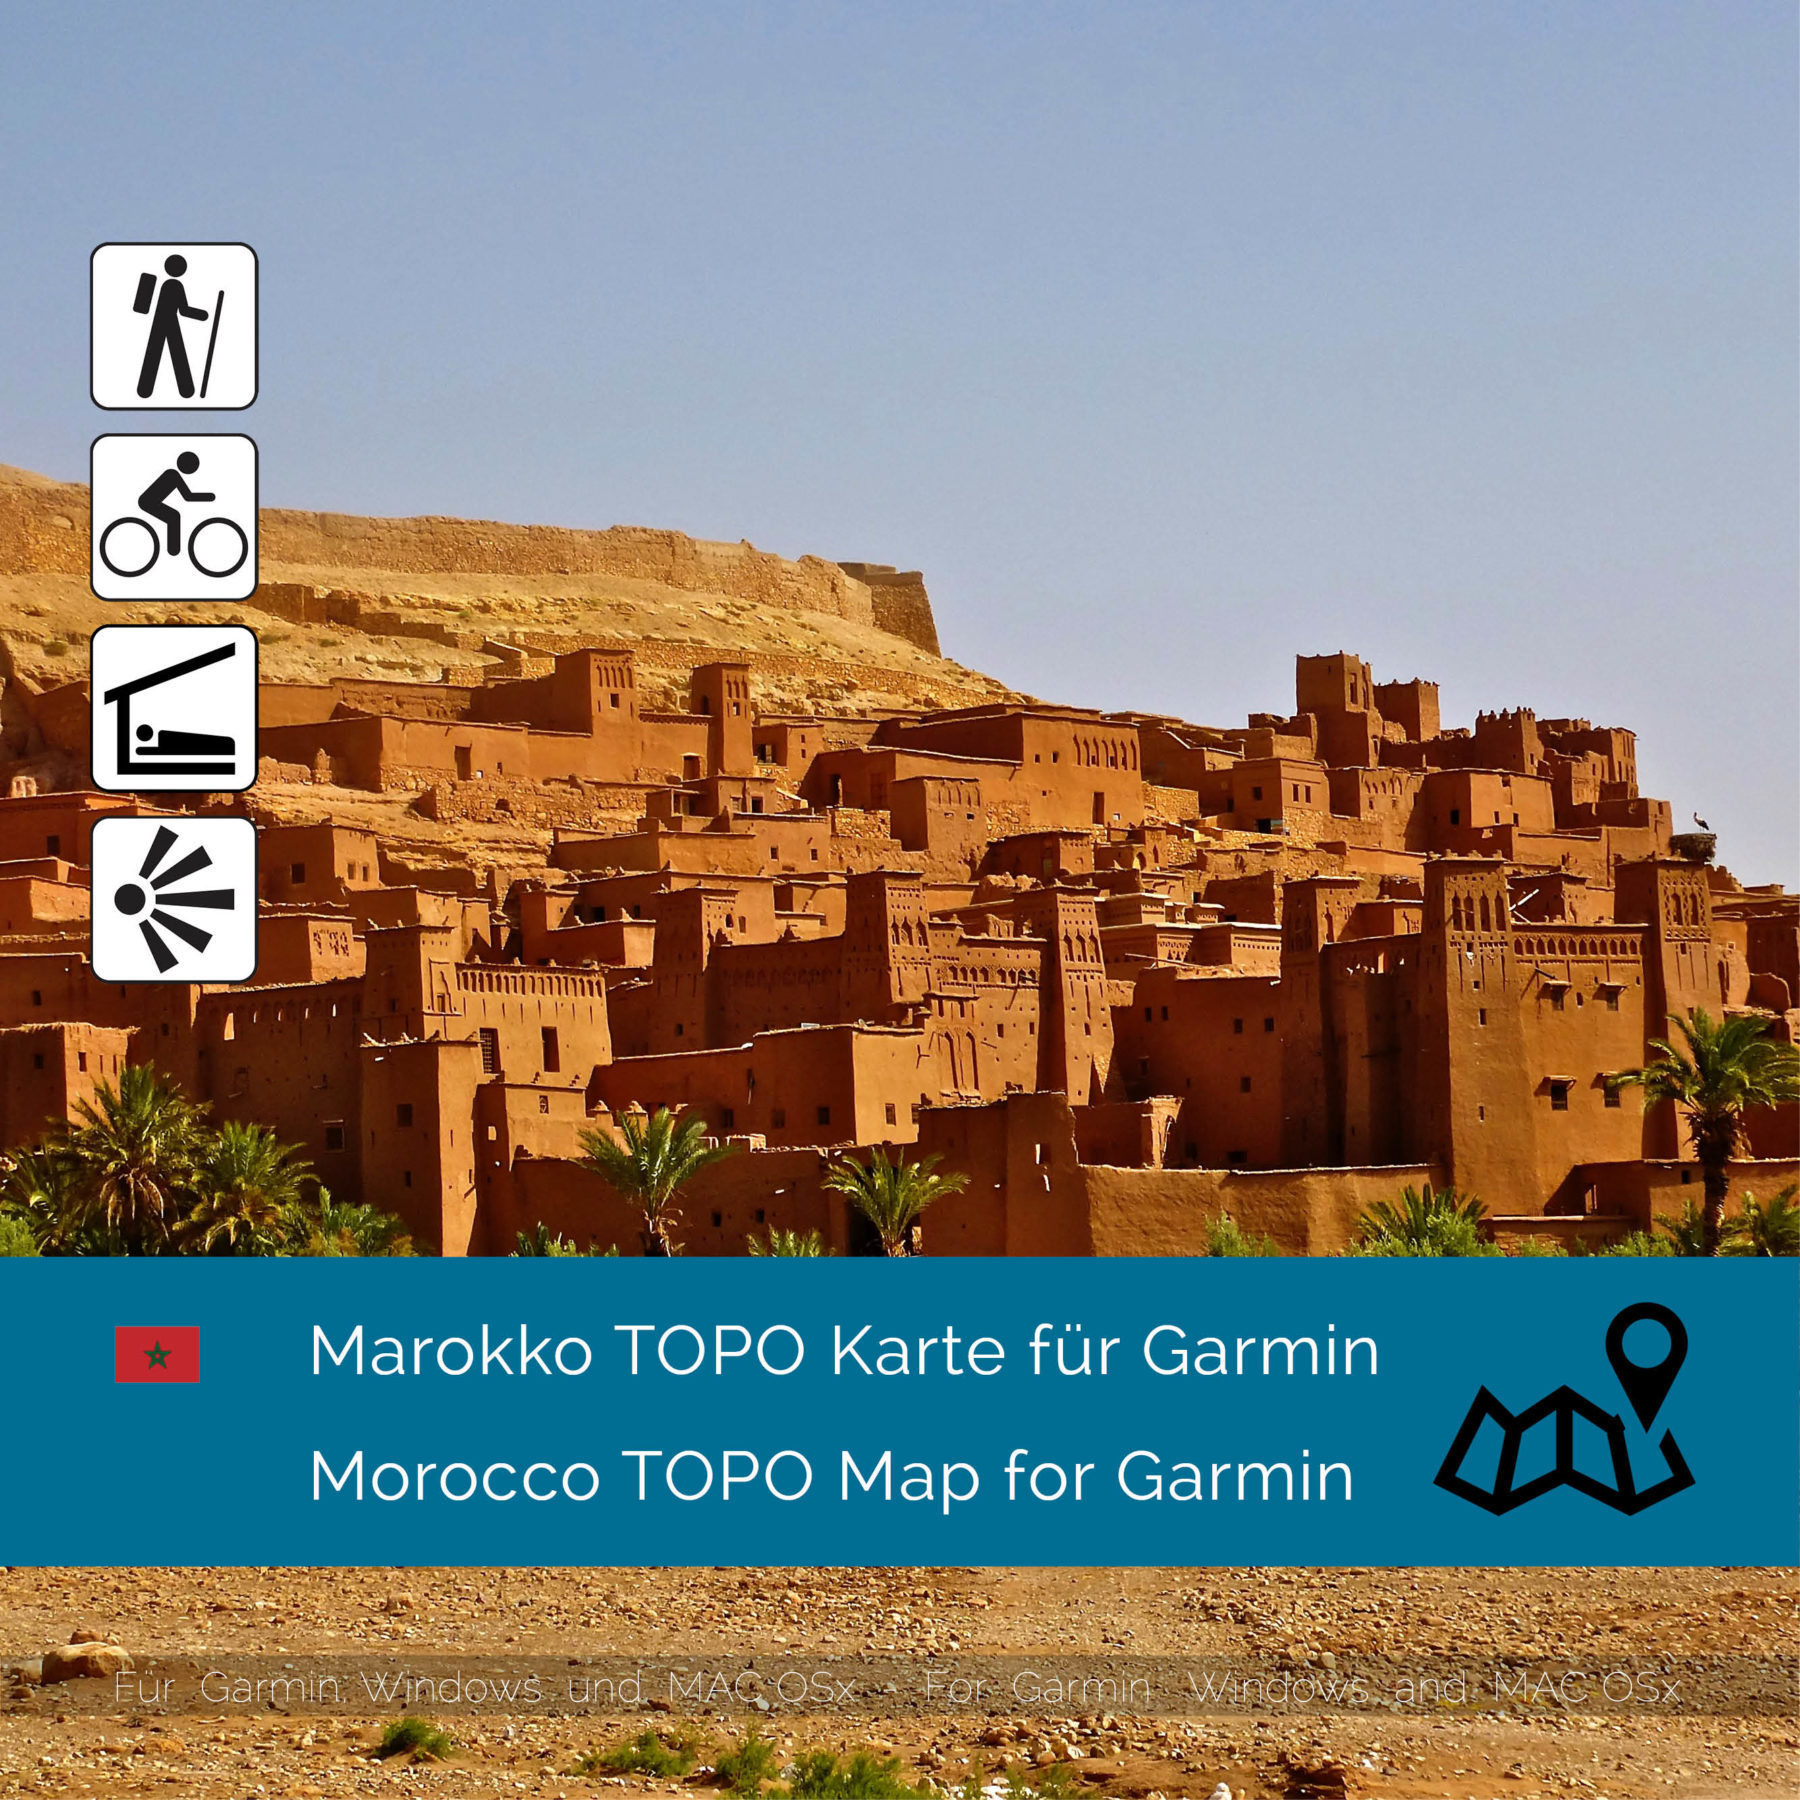 Marokko TOPO Karte für Garmin jetzt online im Shop als Download kaufen!